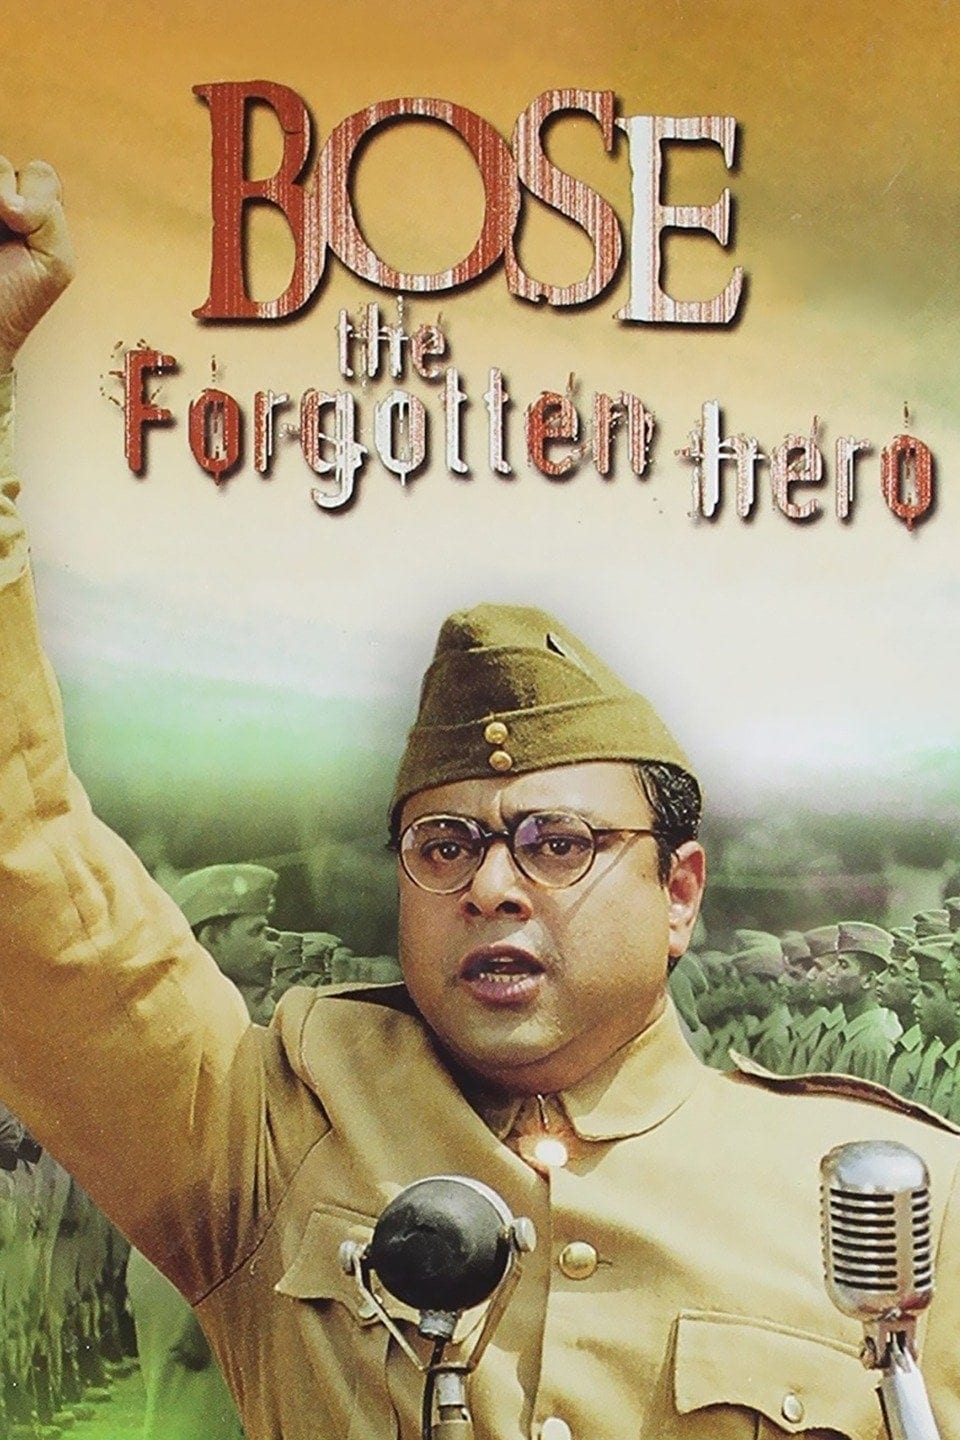 Poster for the movie "Netaji Subhas Chandra Bose: The Forgotten Hero"